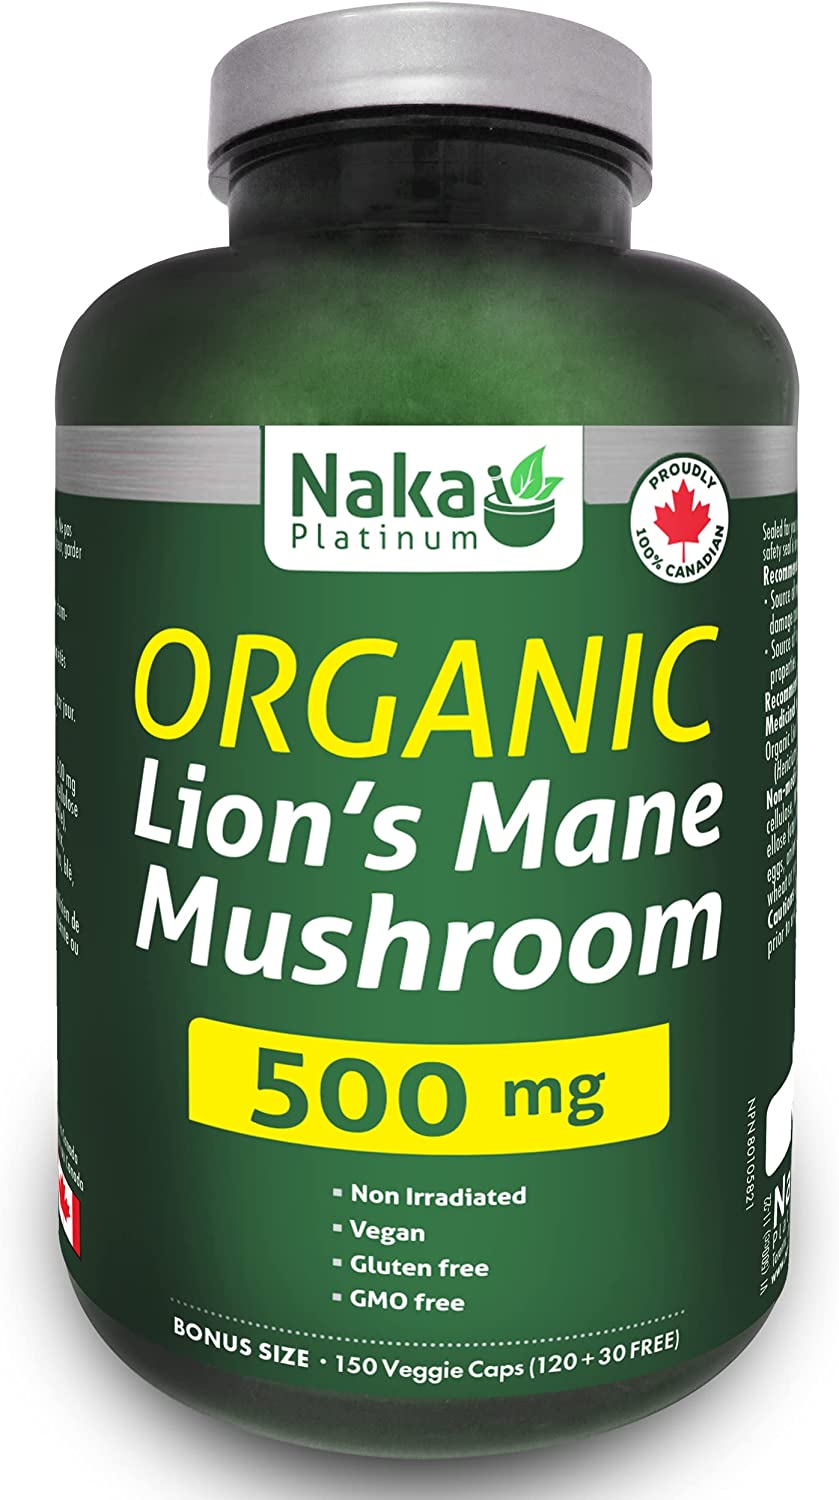 Naka Platinum Organic Lion’s Mane Mushroom 500mg (150 caps)